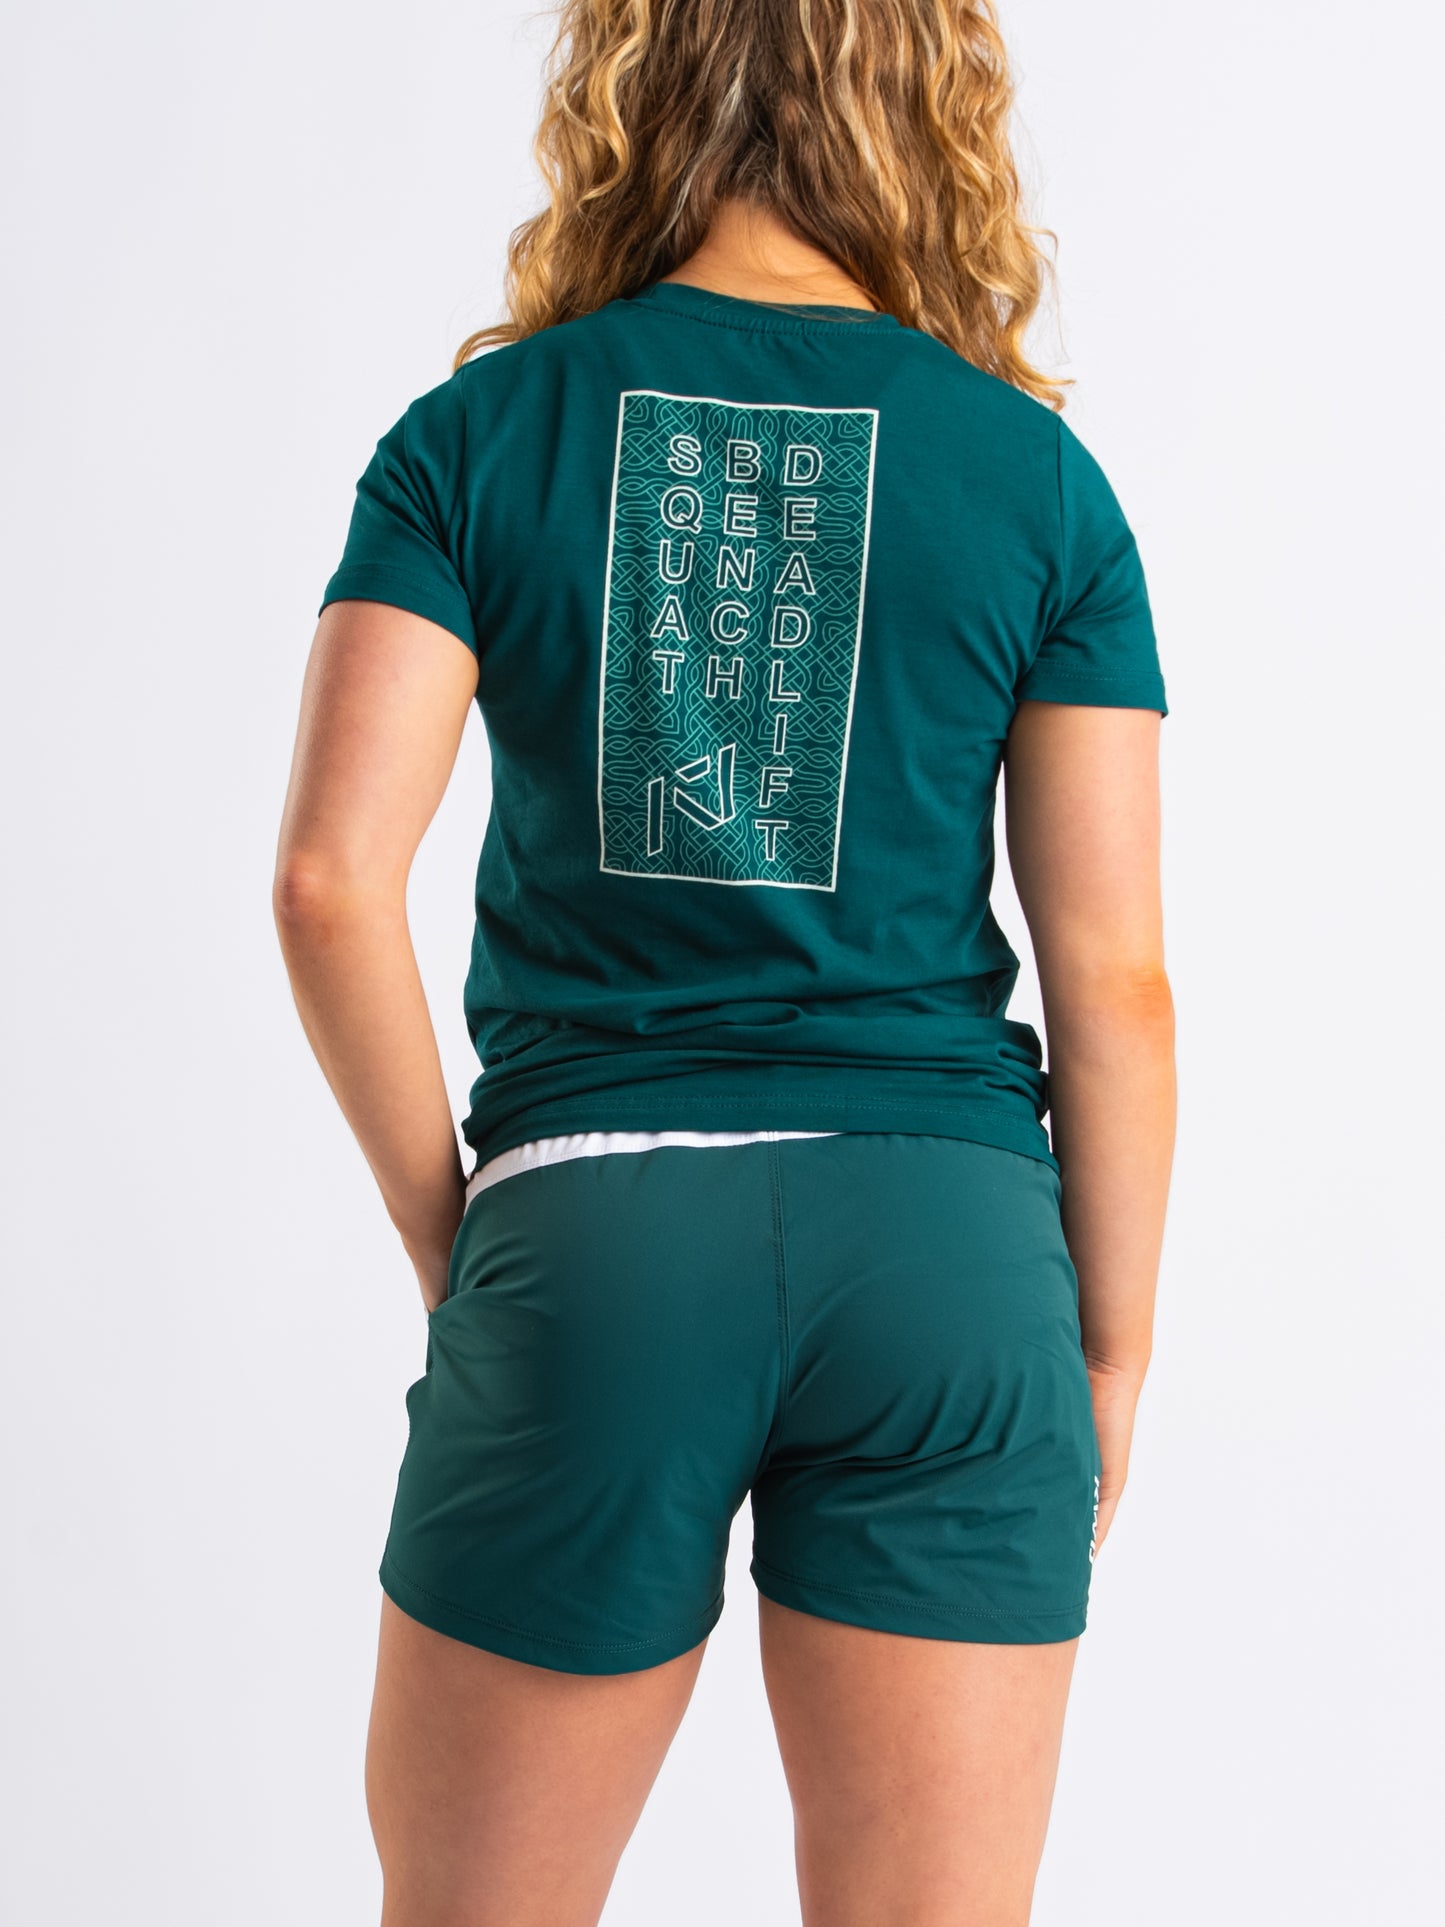 
                  
                    Lifts Women's Shirt - Emerald Forás
                  
                